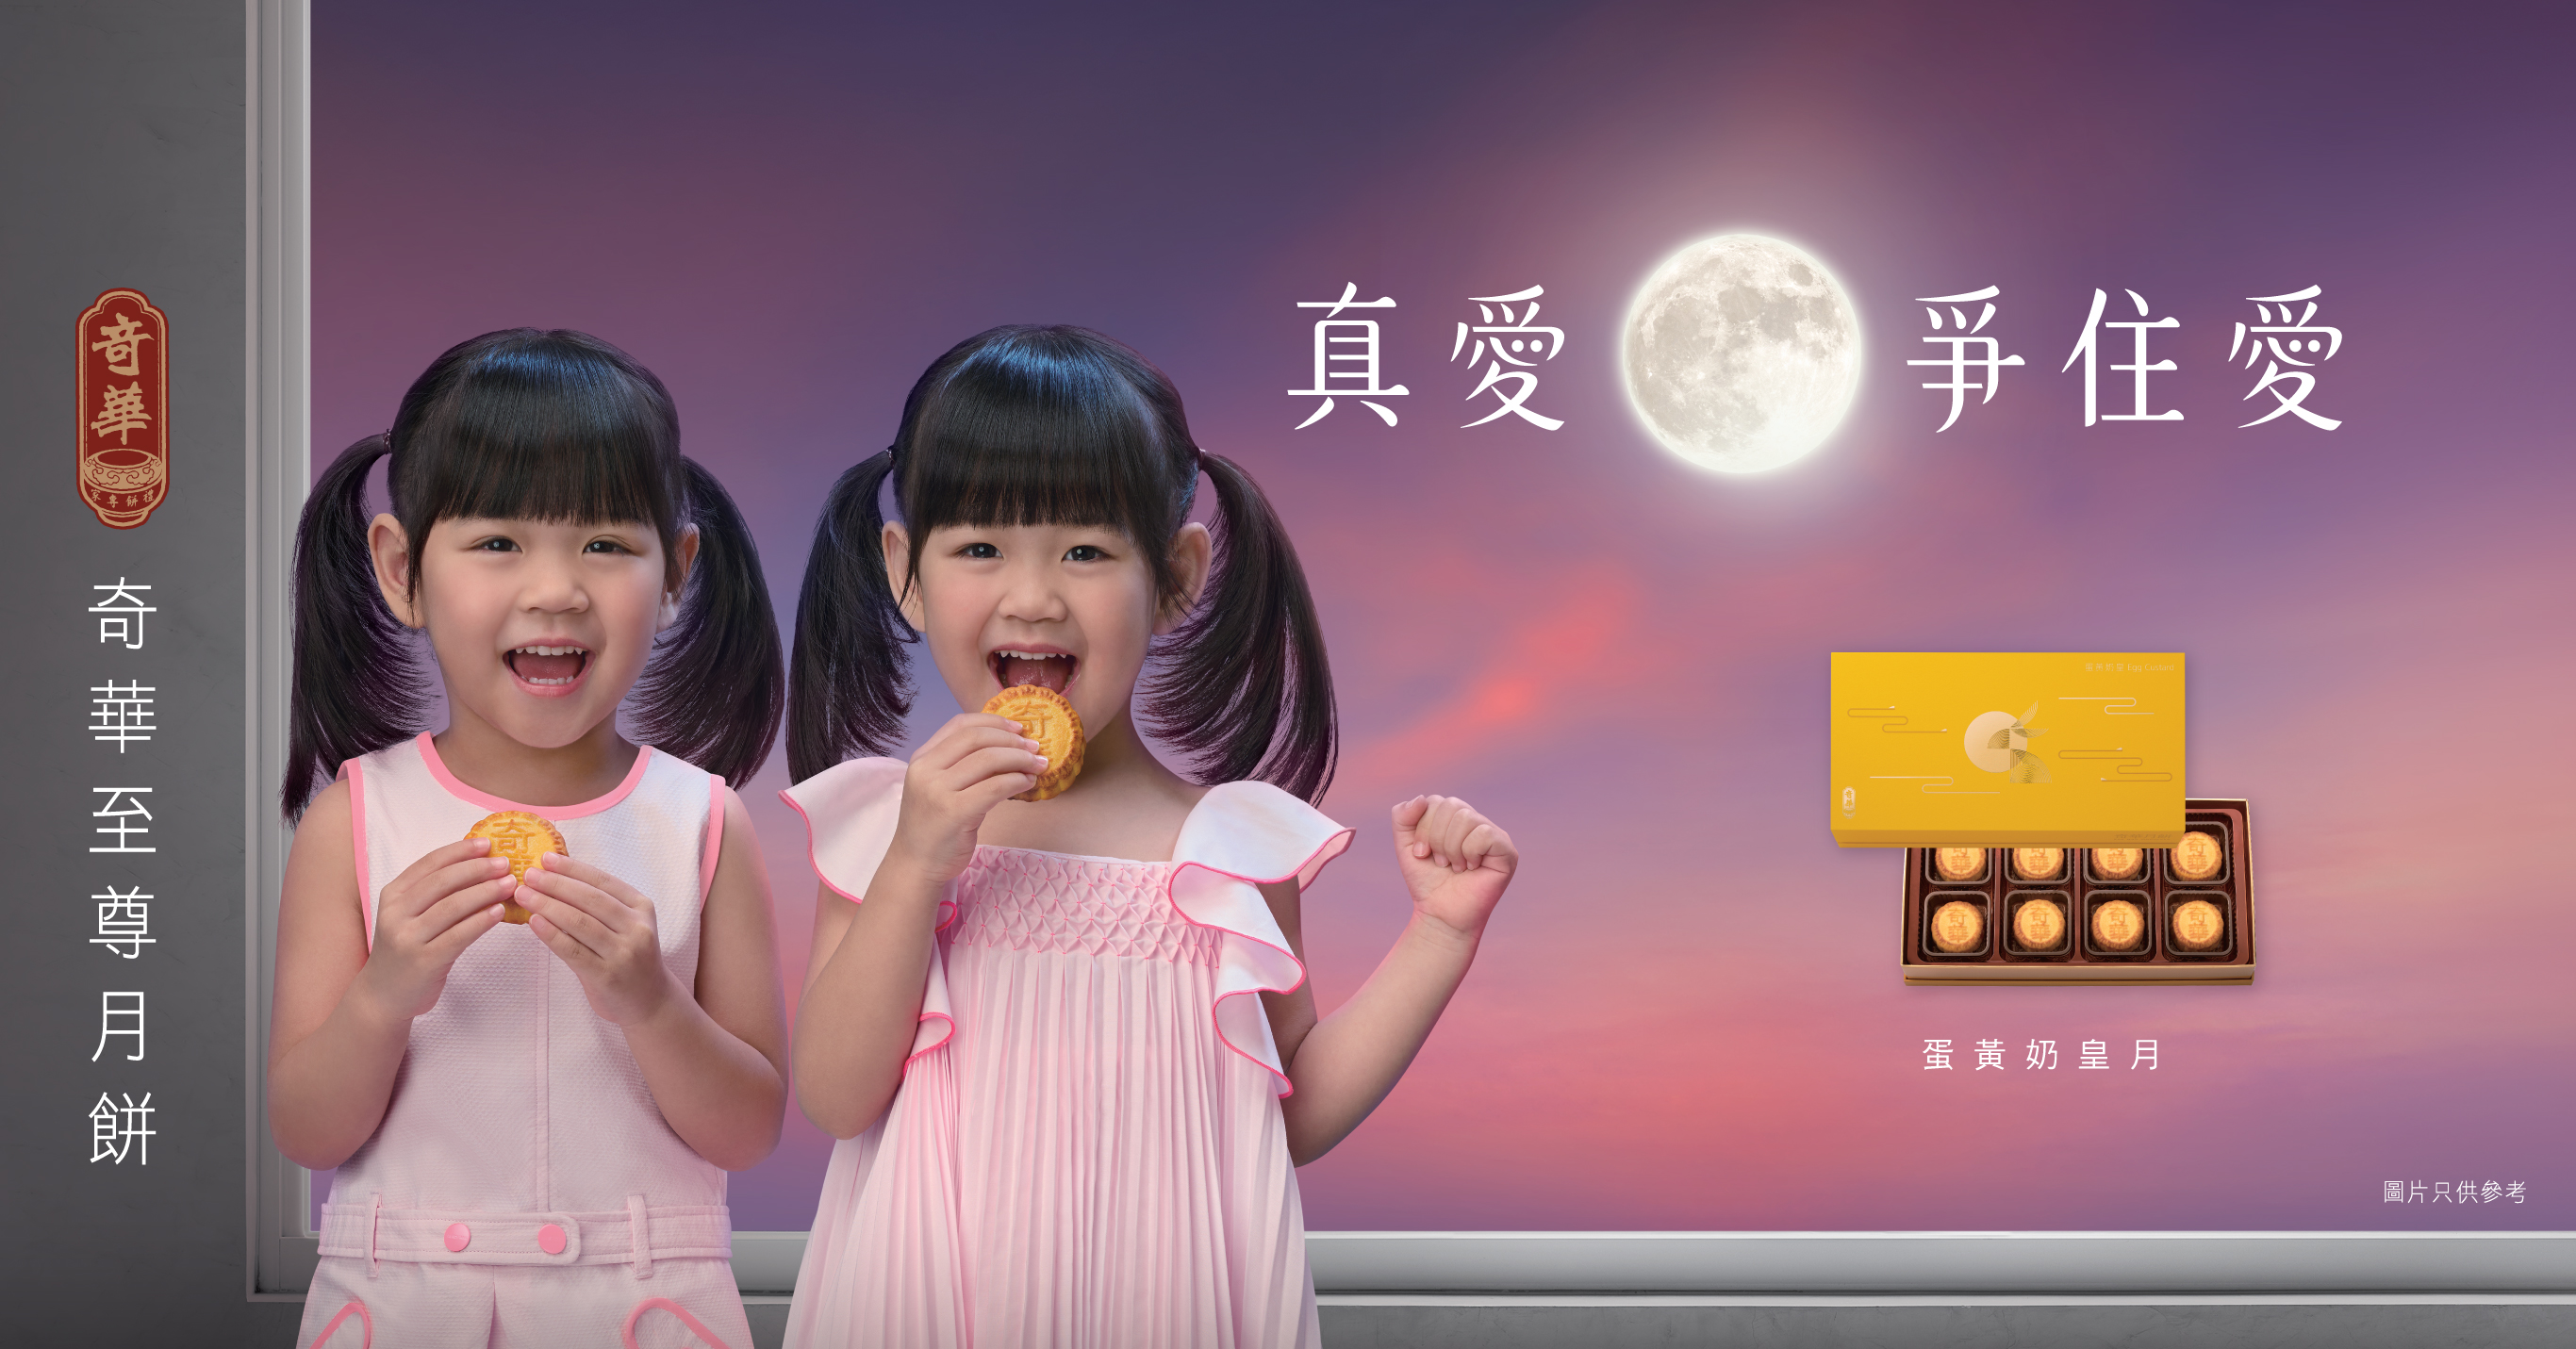 全新奇华饼家电视广告现已推出